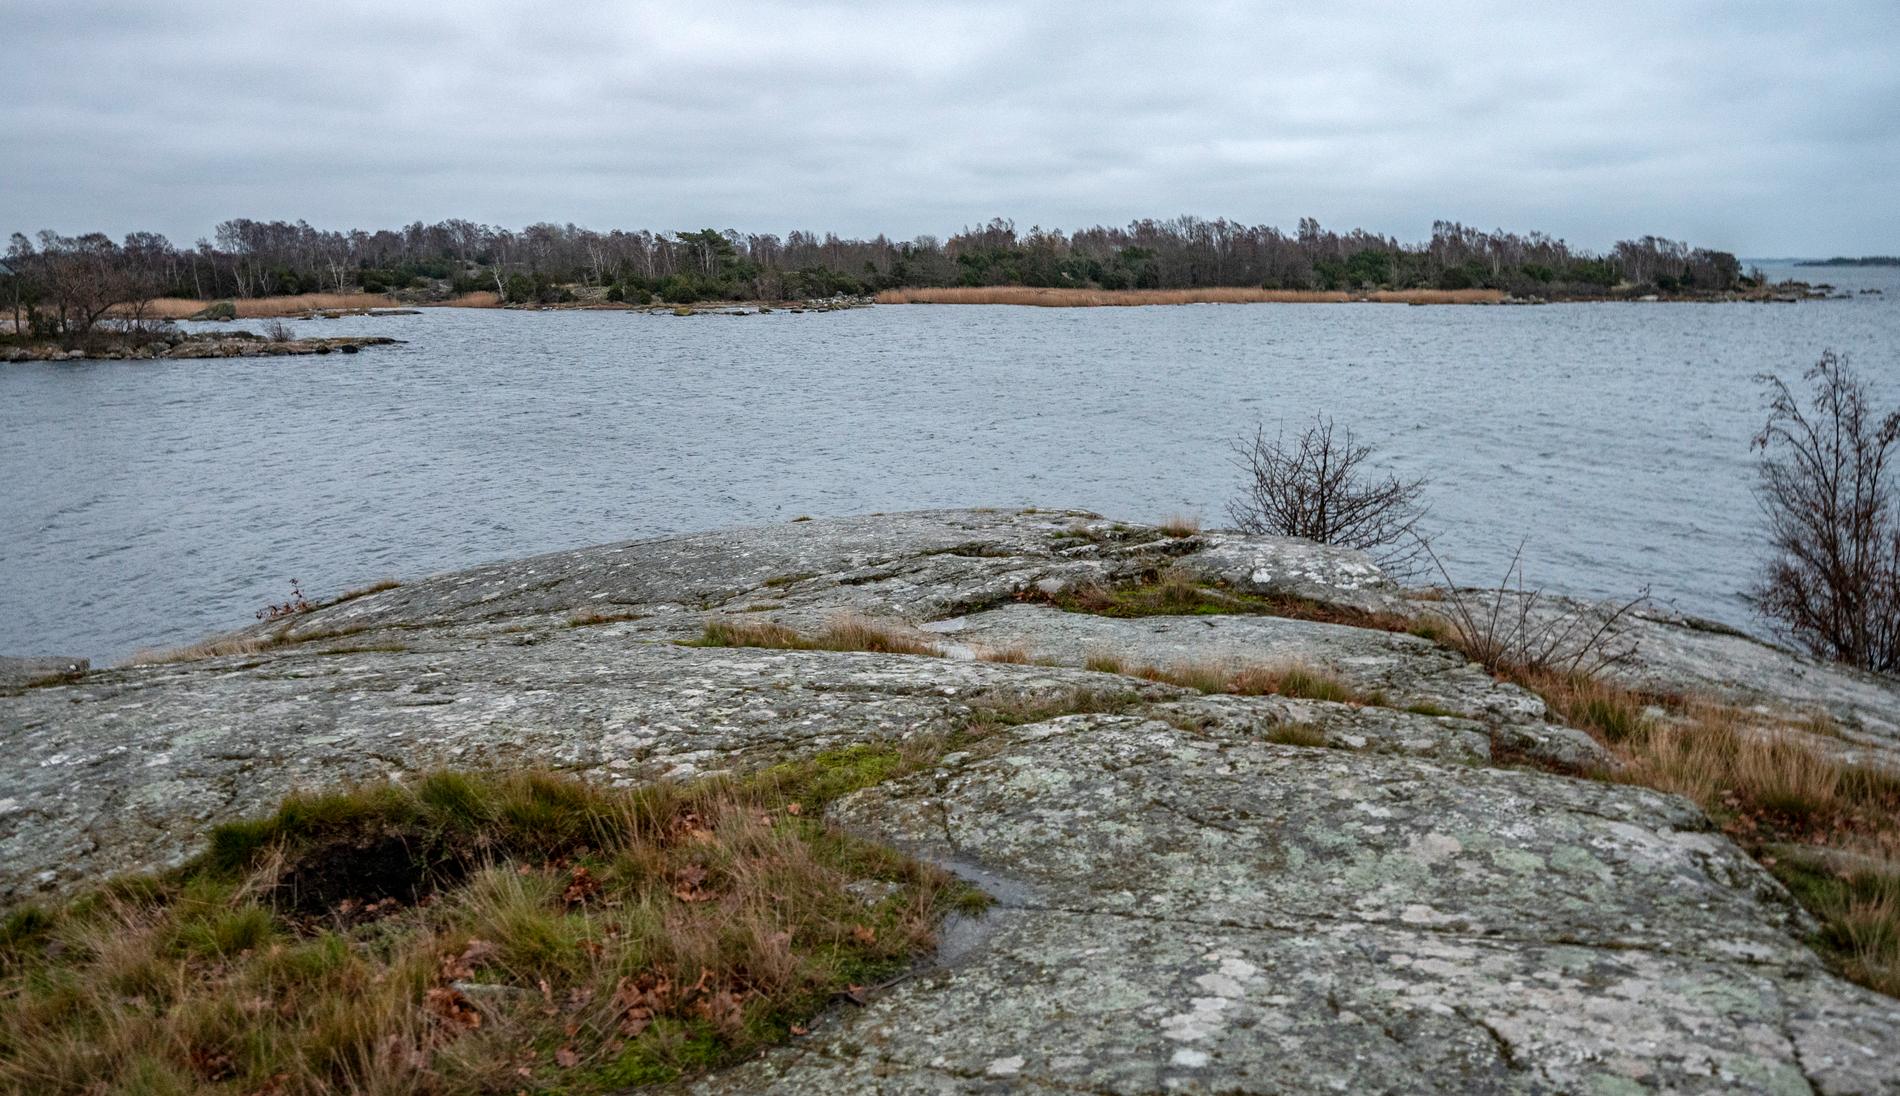 Ön Varö i Karlskrona skärgård sedd från Skillingenäs. Här hittades kvarlevorna efter den 57-årige man som mördades i sitt hem i somras. Arkivbild.